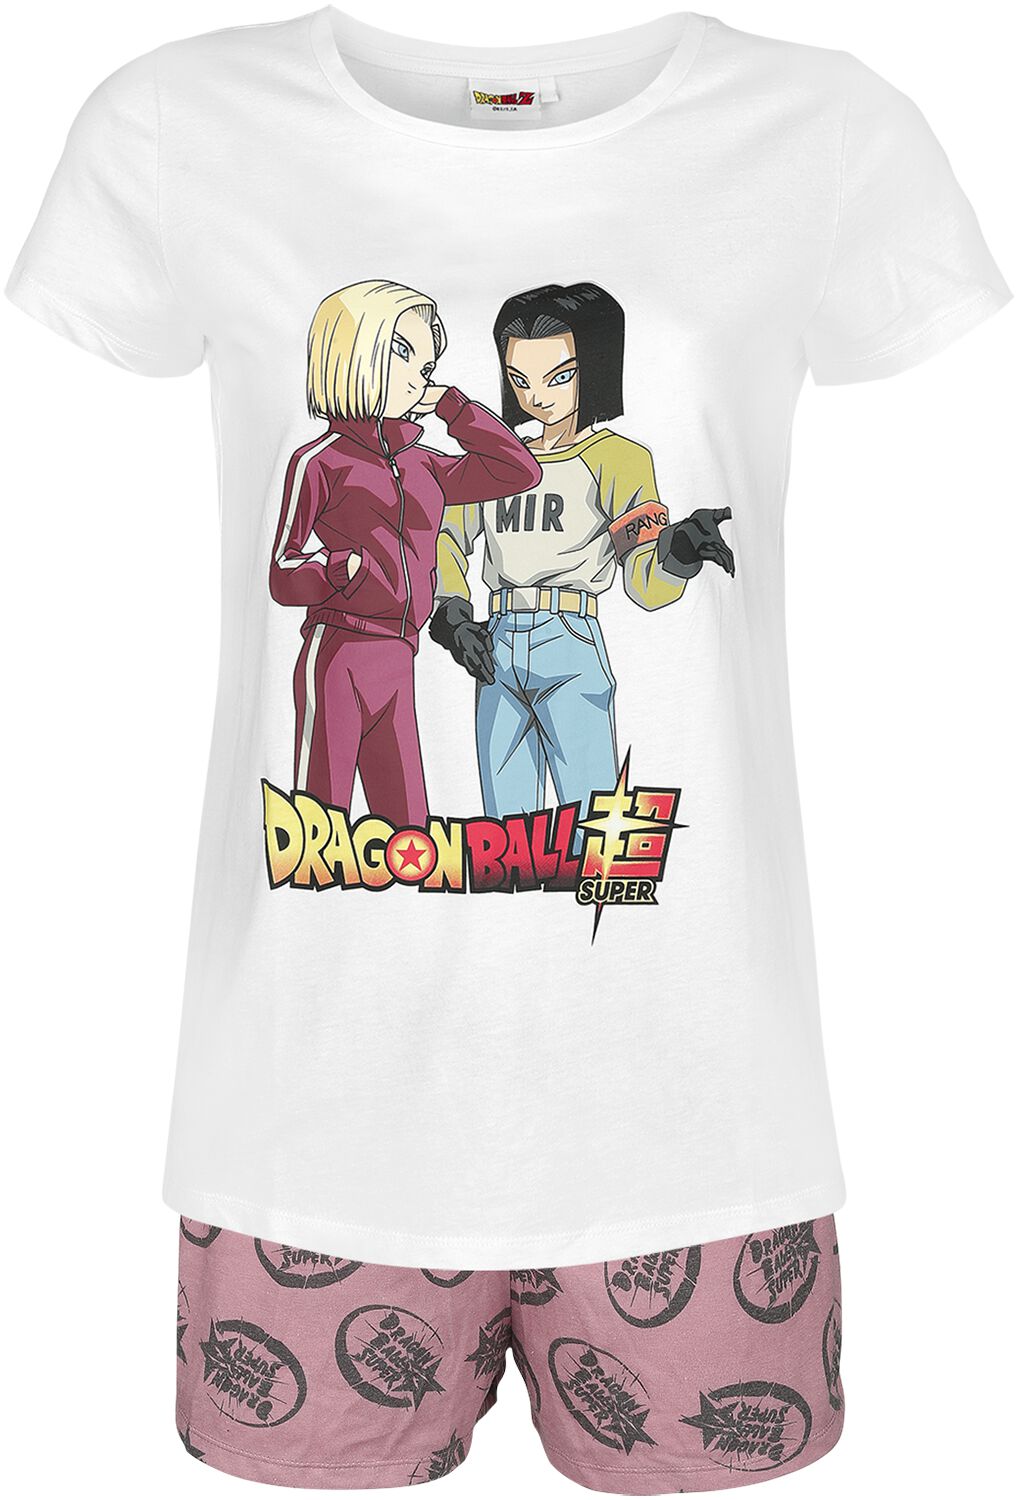 Dragon Ball - Gaming Schlafanzug - Super - Androids - S bis 3XL - für Damen - Größe M - weiß/rosa  - EMP exklusives Merchandise!